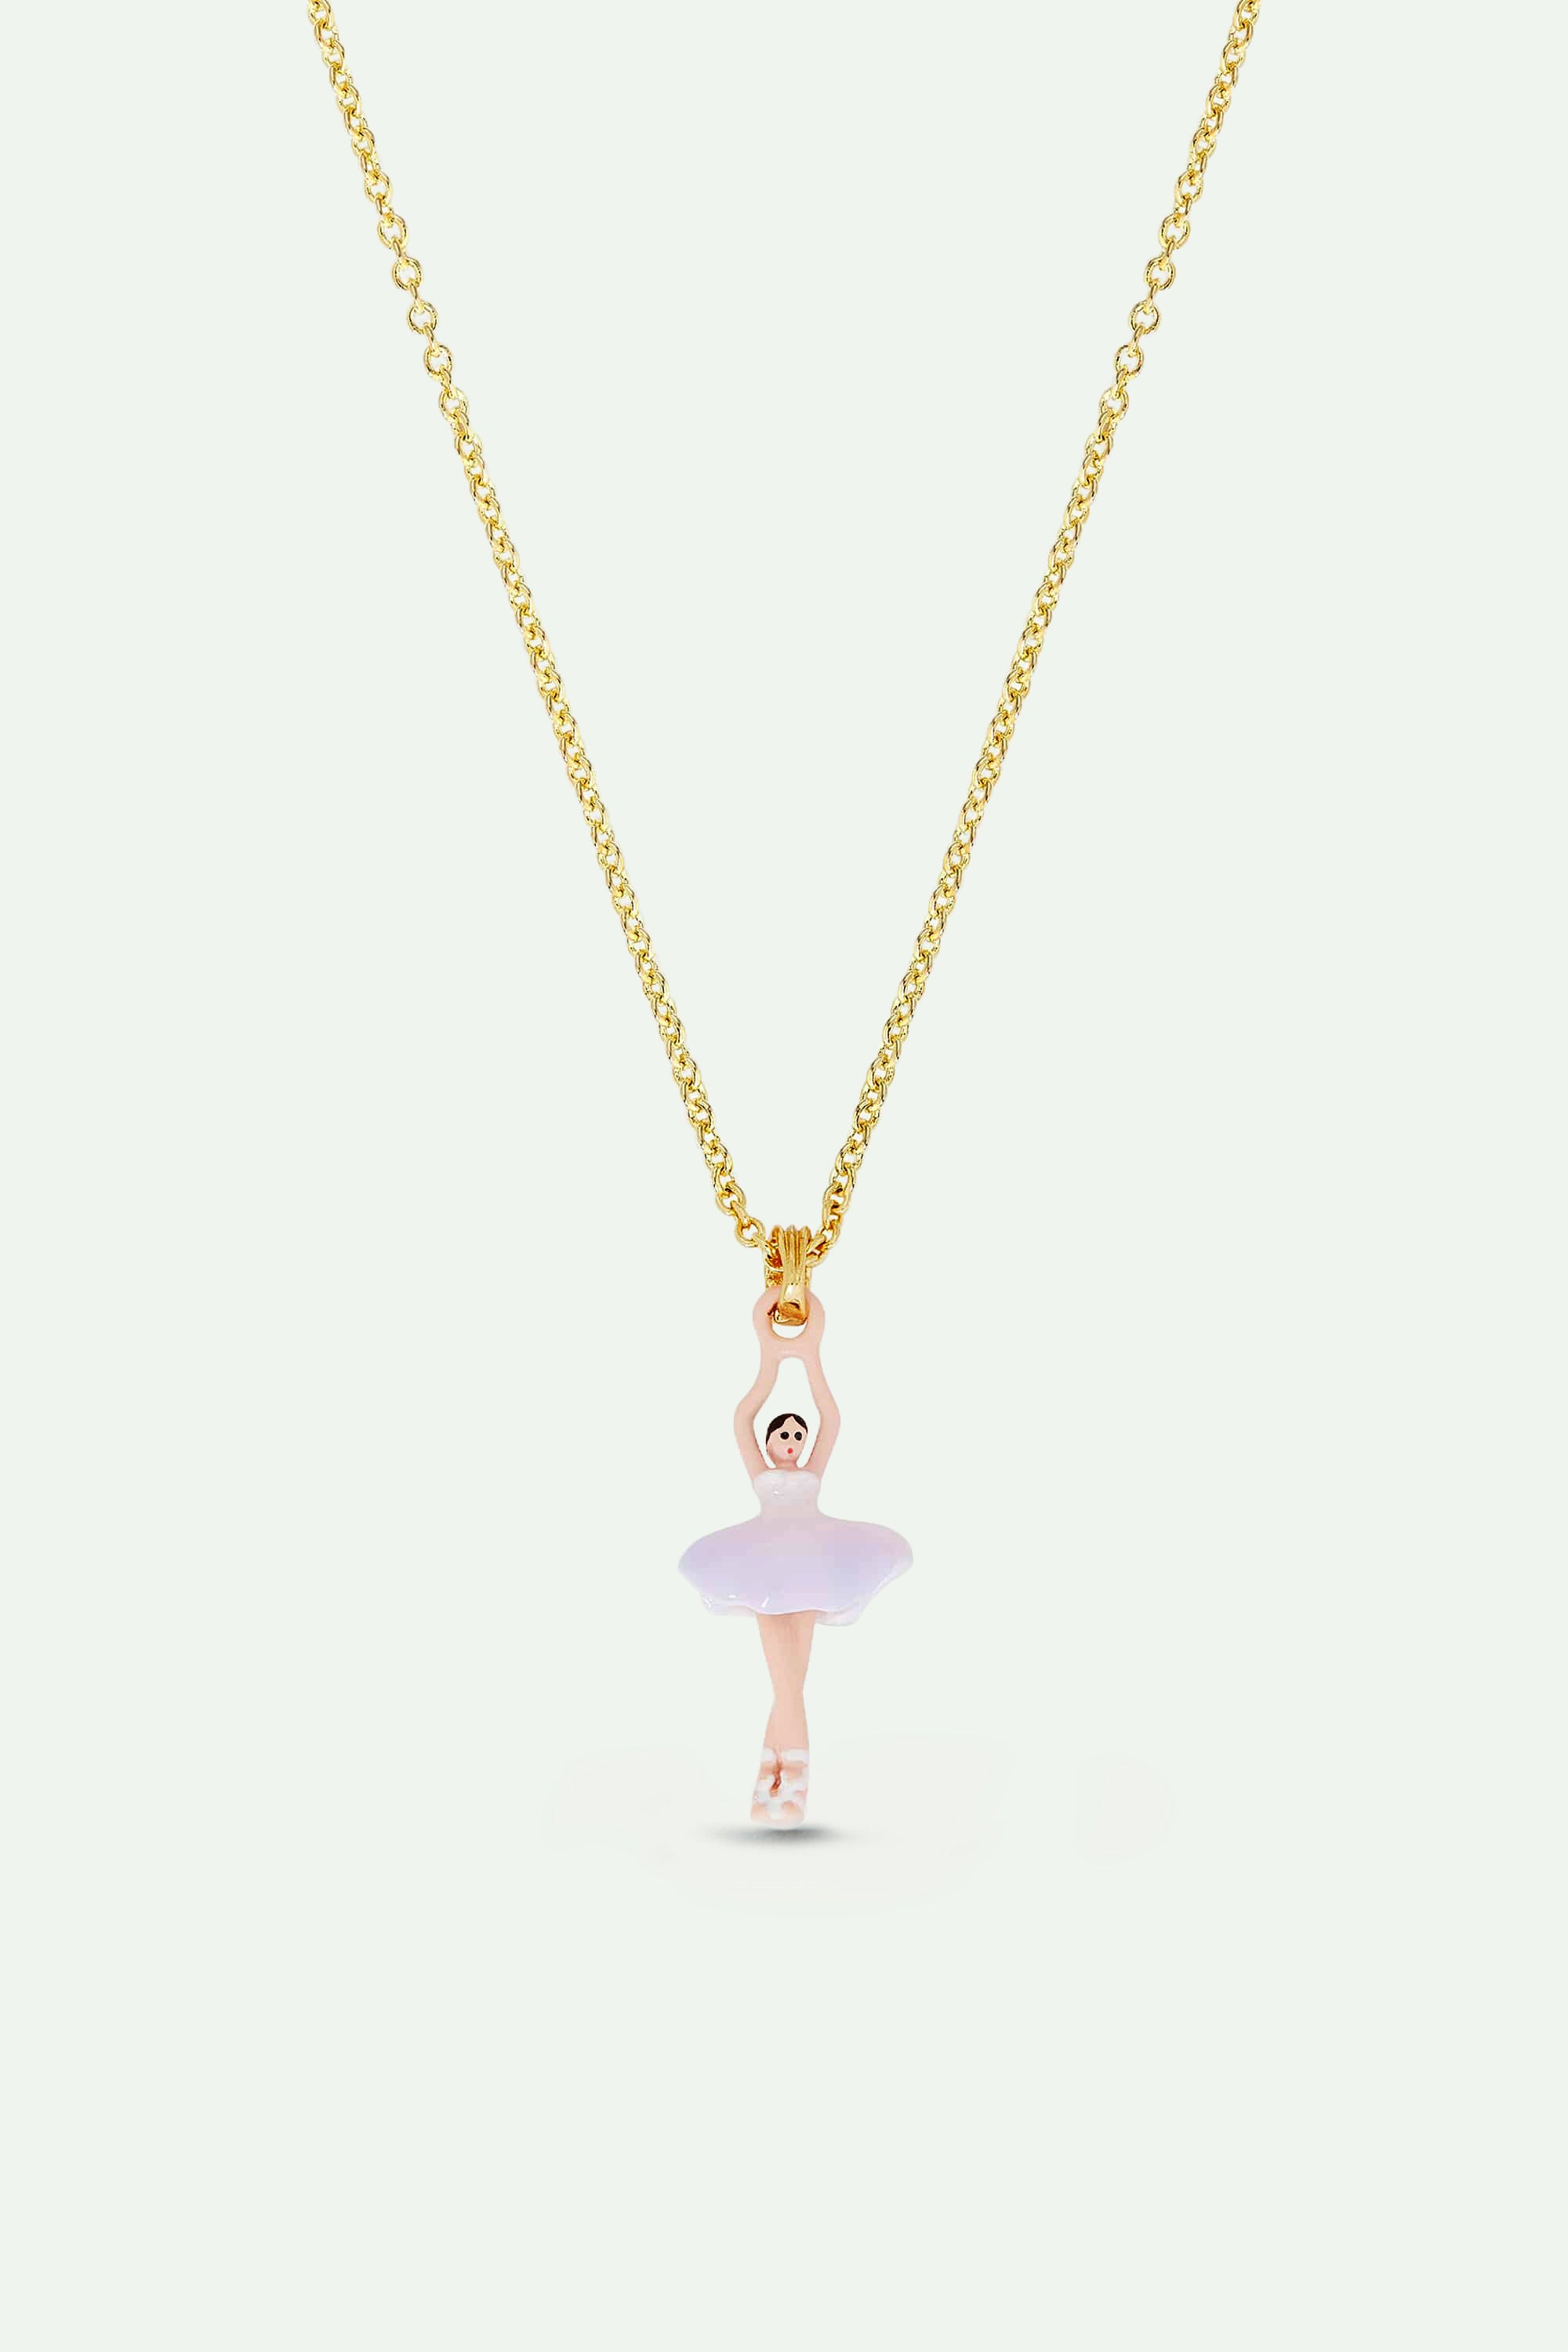 Lilac and white mini ballerina pendant necklace